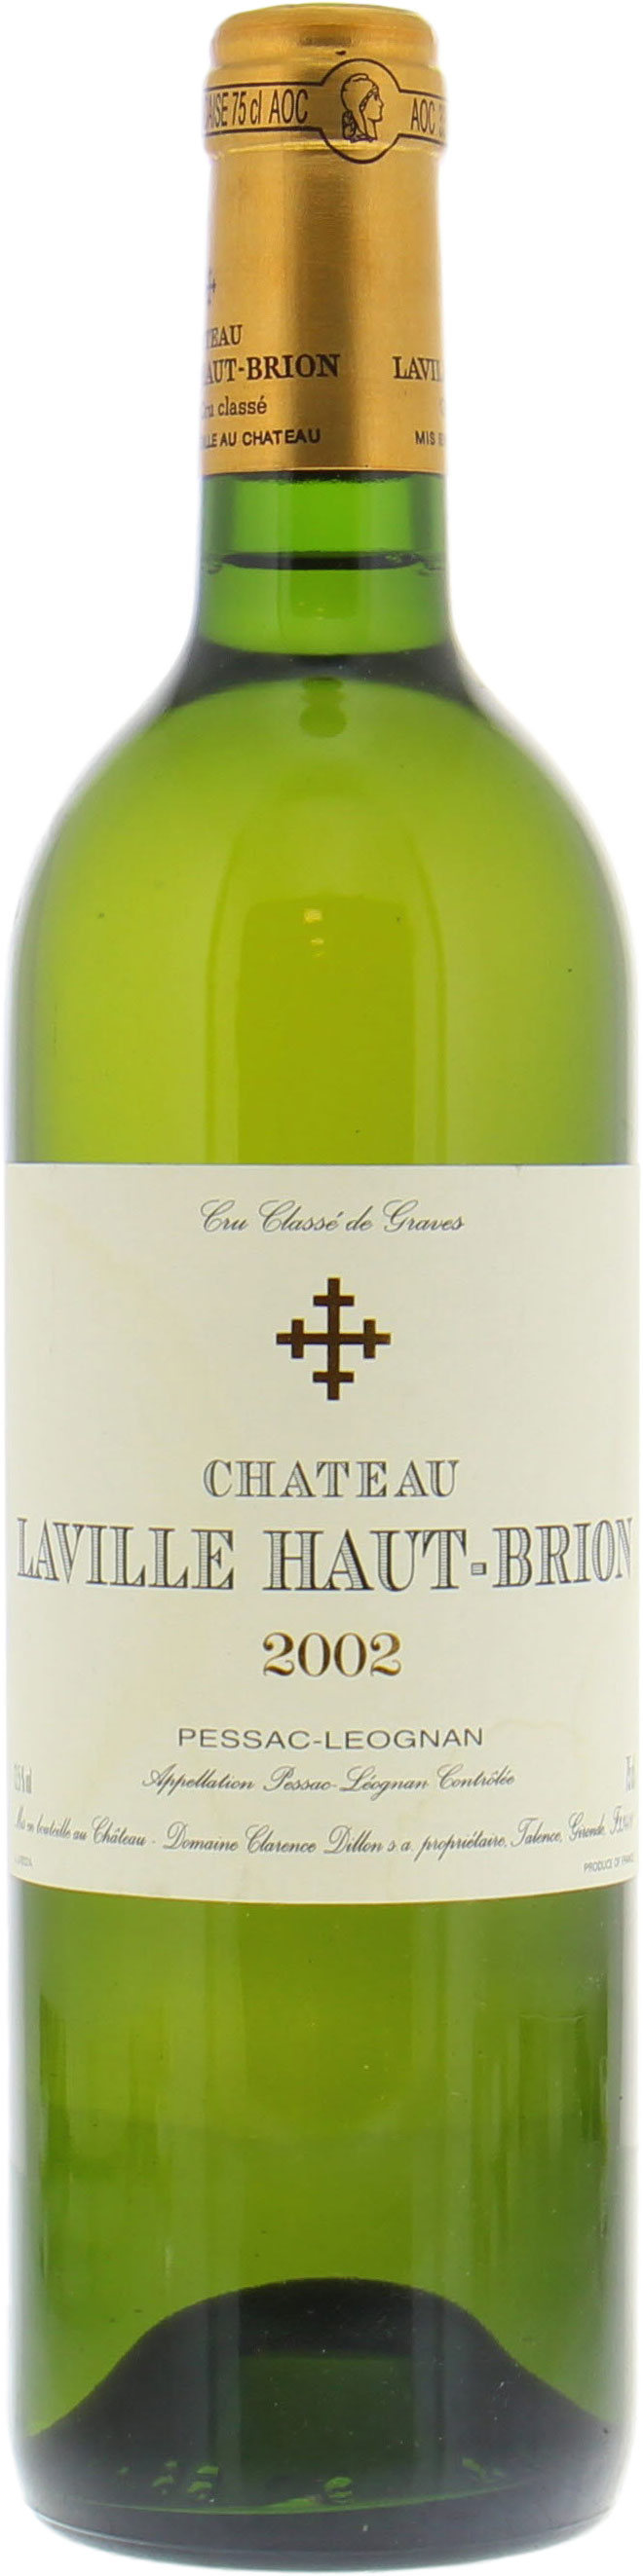 Chateau Laville Haut Brion Blanc - Chateau Laville Haut Brion Blanc 2002